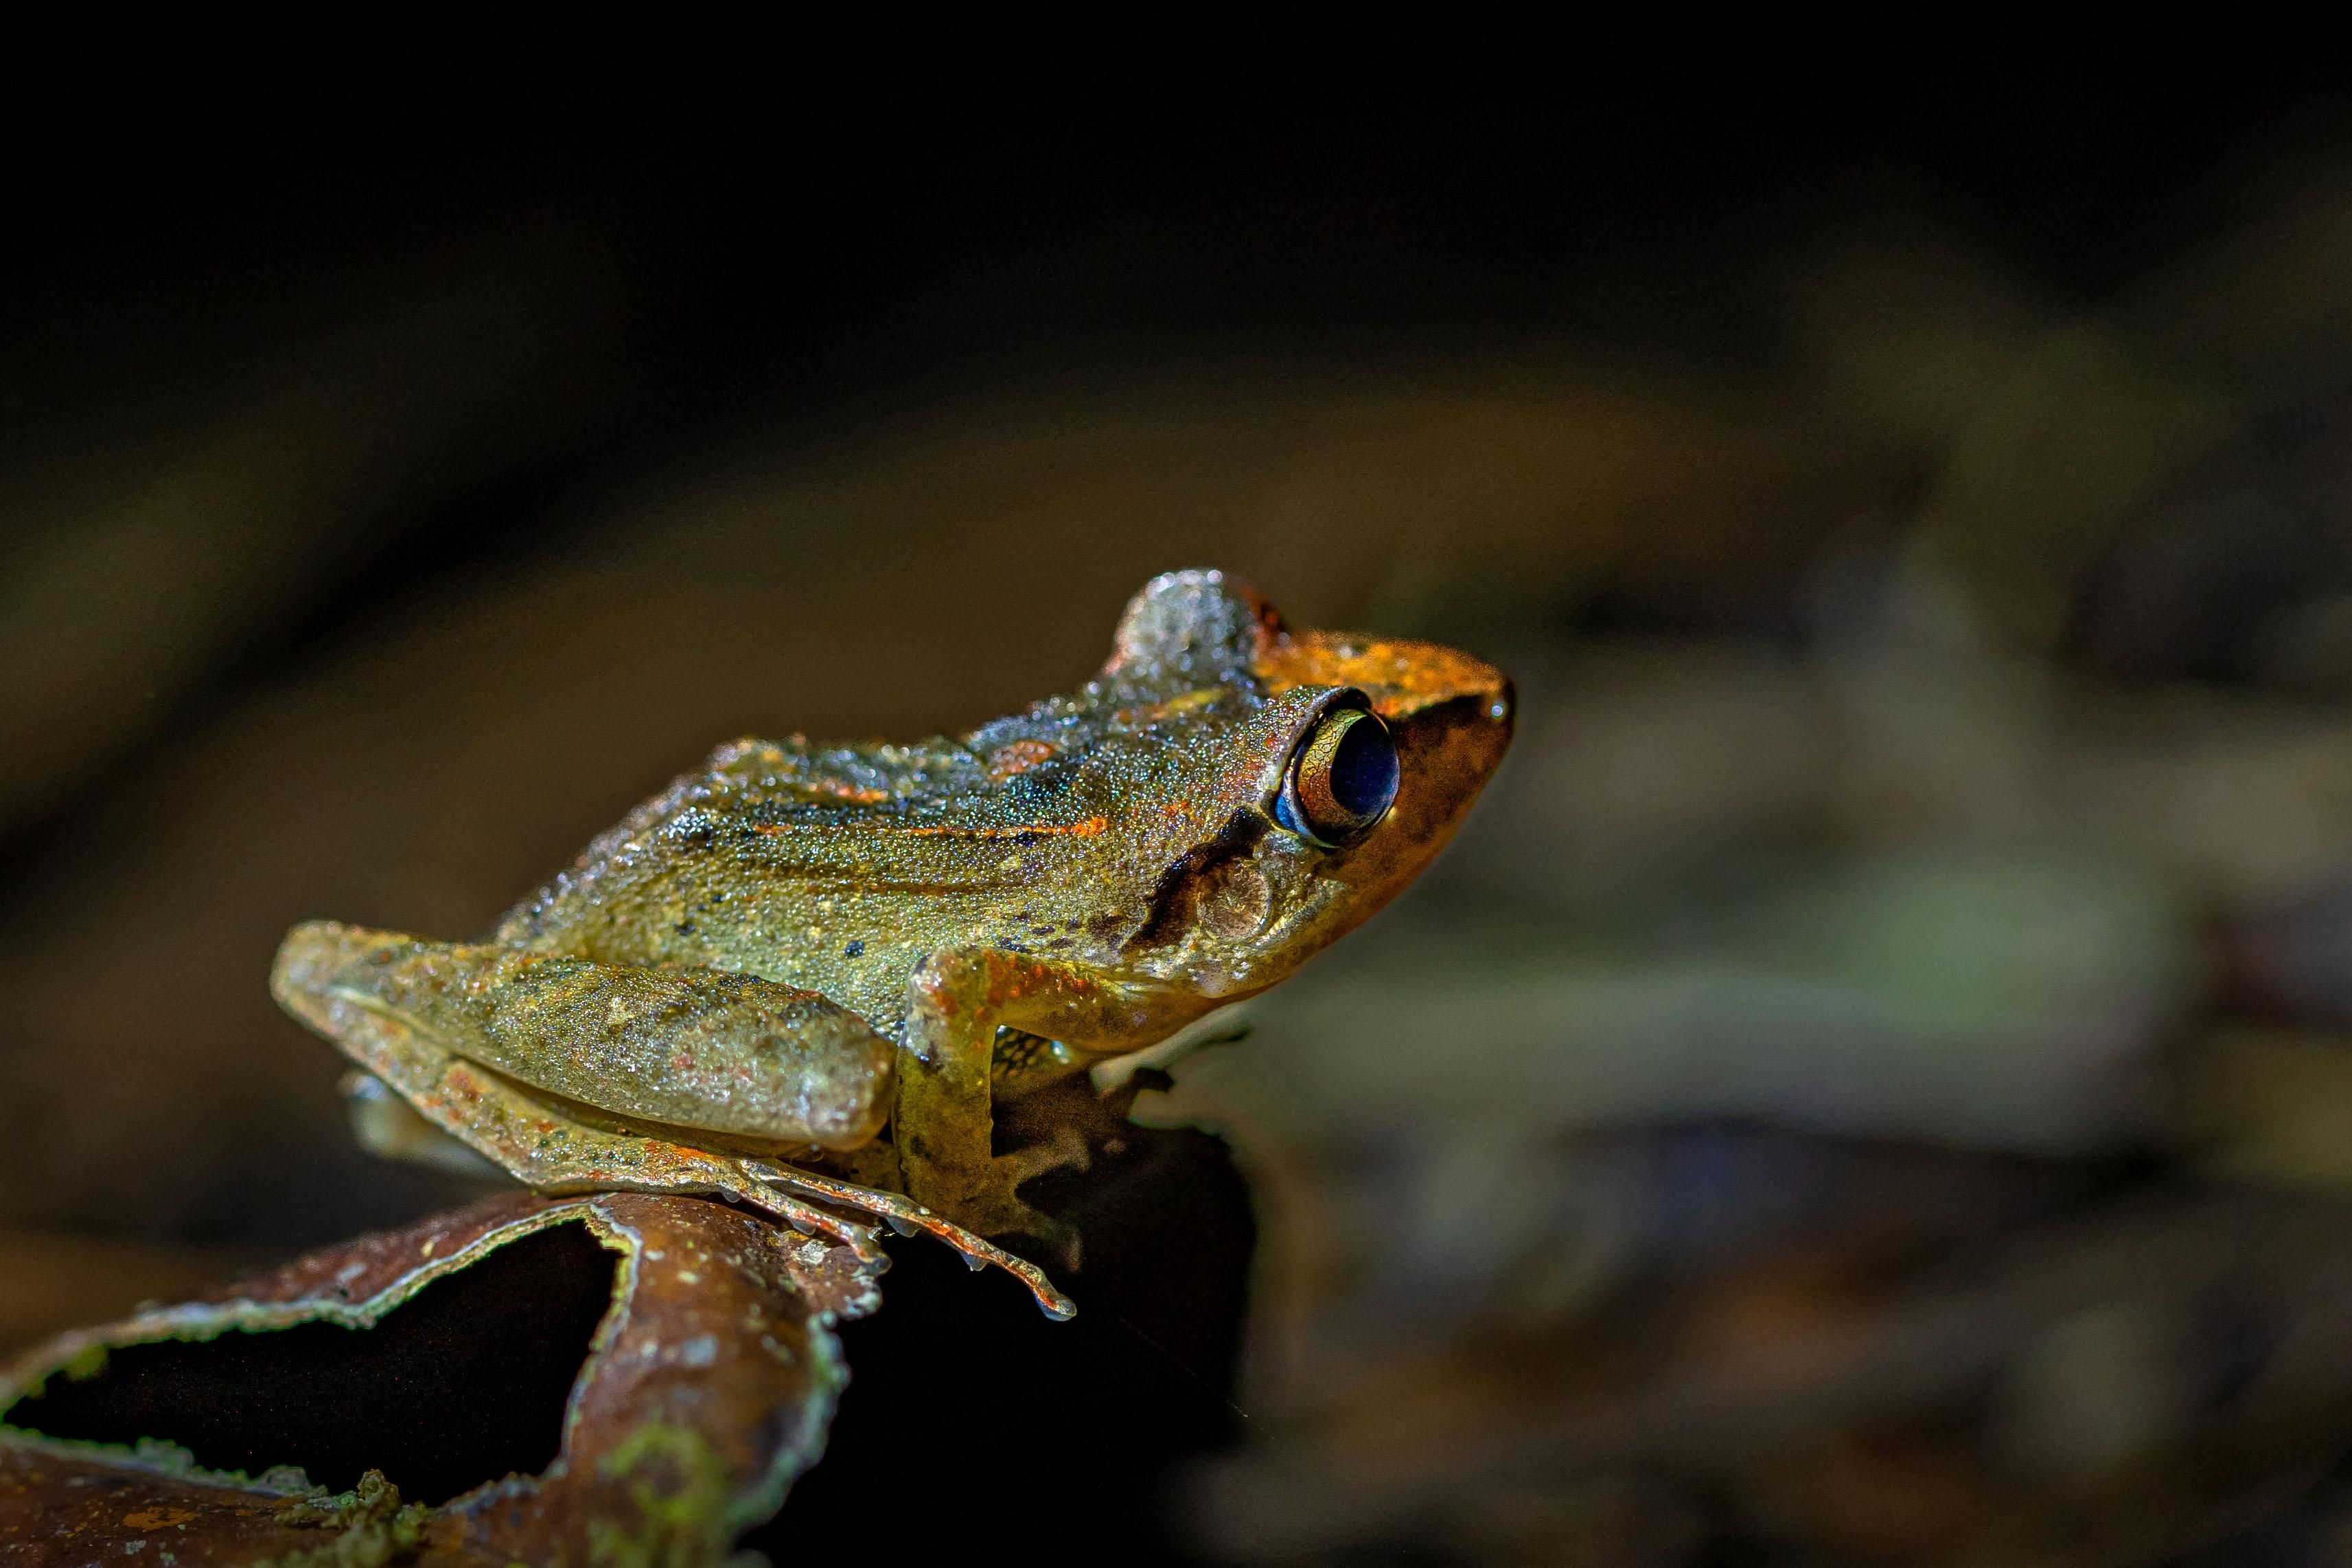 A Pastures frog in Ecuador